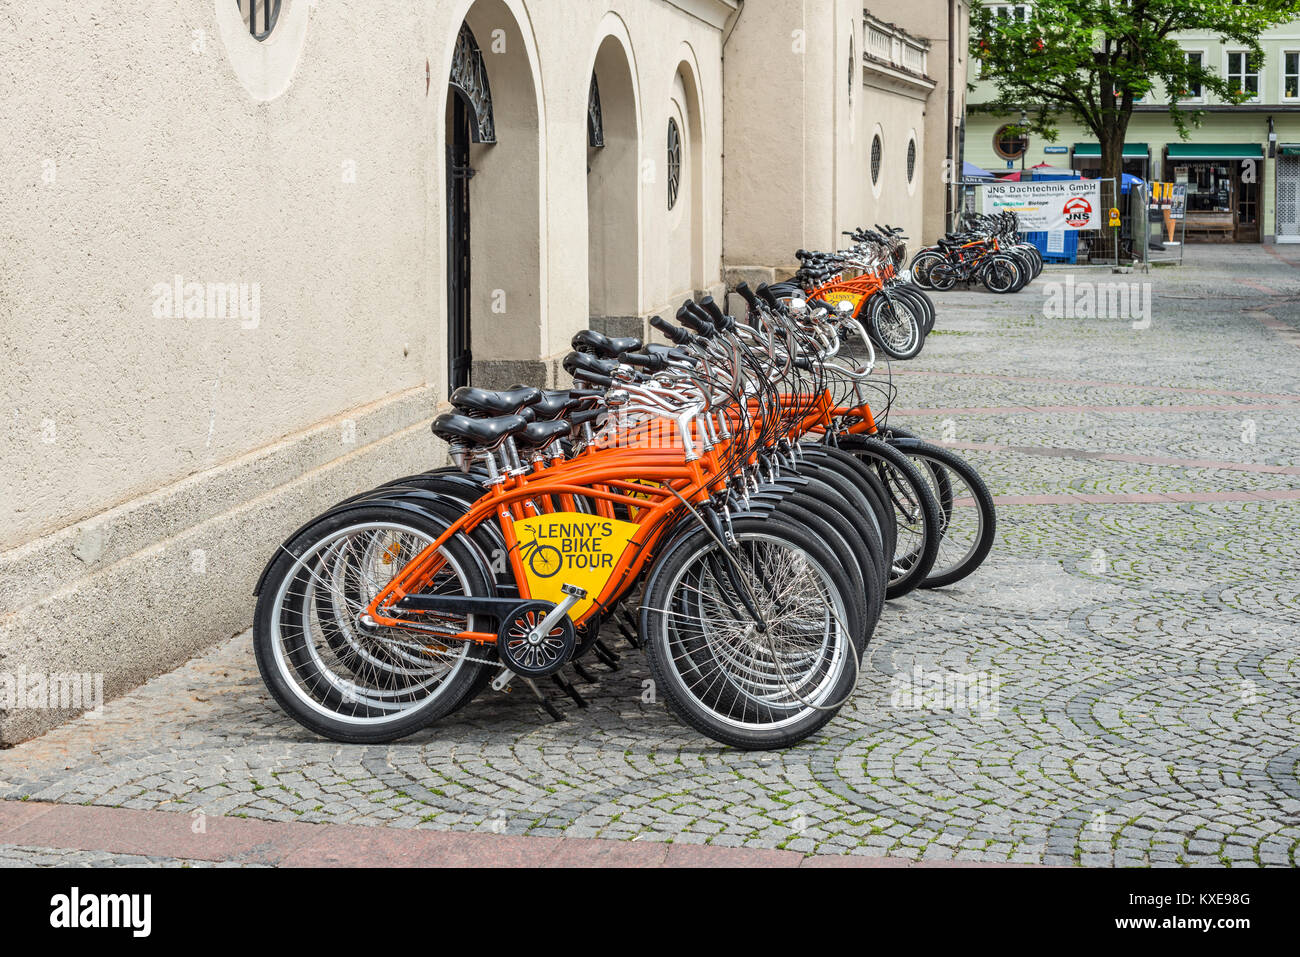 Monaco di Baviera, Germania - 29 Maggio 2016: Biciclette Lenny's Bike Tour sono in attesa per i turisti per escursioni gite in bicicletta a Monaco di Baviera, Germania. Foto Stock